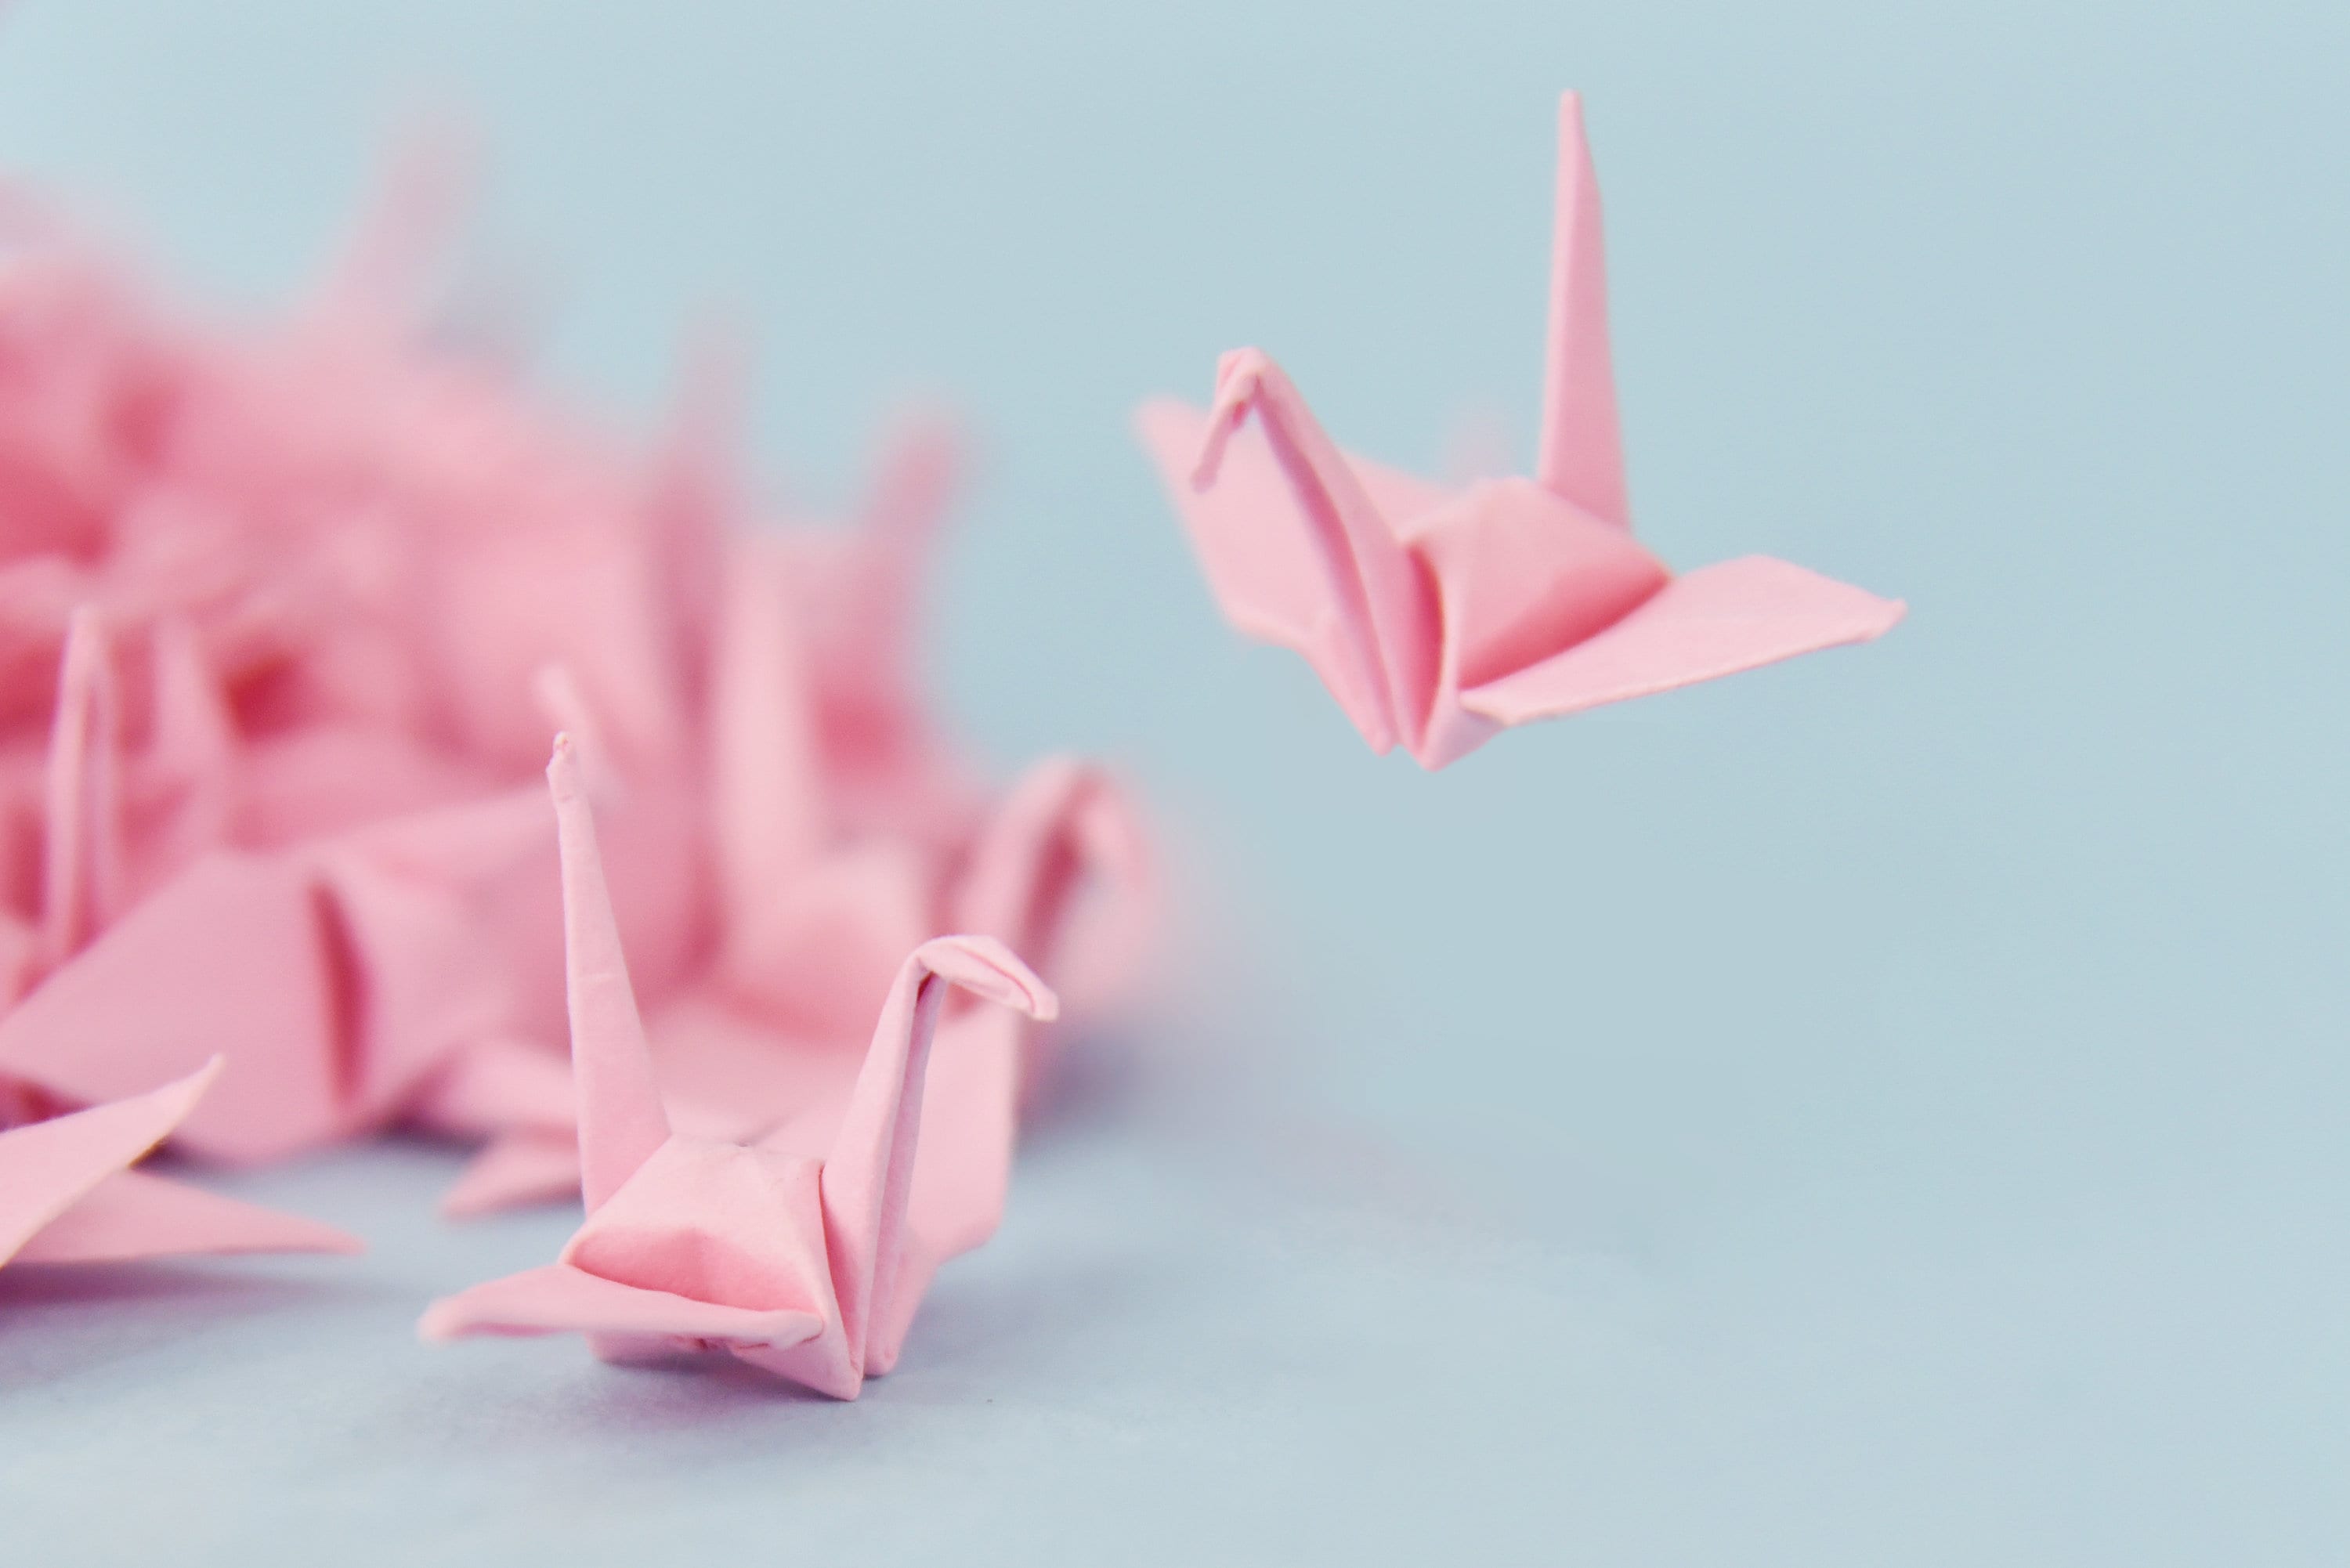 1000 grúas de papel de origami grullas de origami rosa prefabricadas pequeñas 1,5x1,5 pulgadas para decoración de bodas, regalo de aniversario, San Valentín